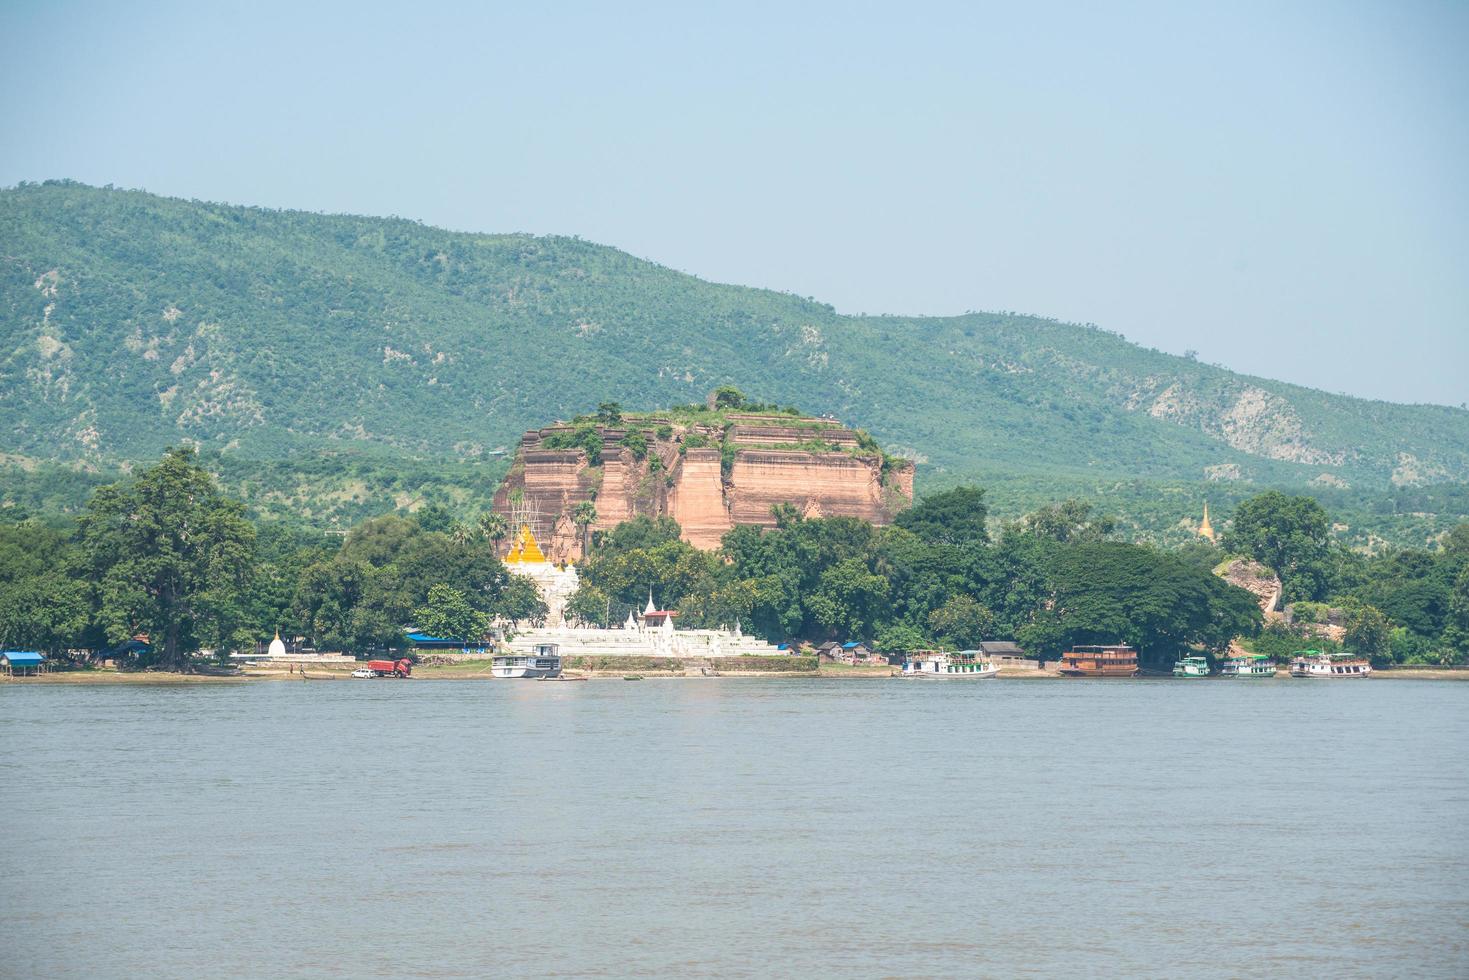 pagode mingun pa hto daw gyi o maior pagode incompleto do mundo em myanmar vista do rio irrawaddy. foto